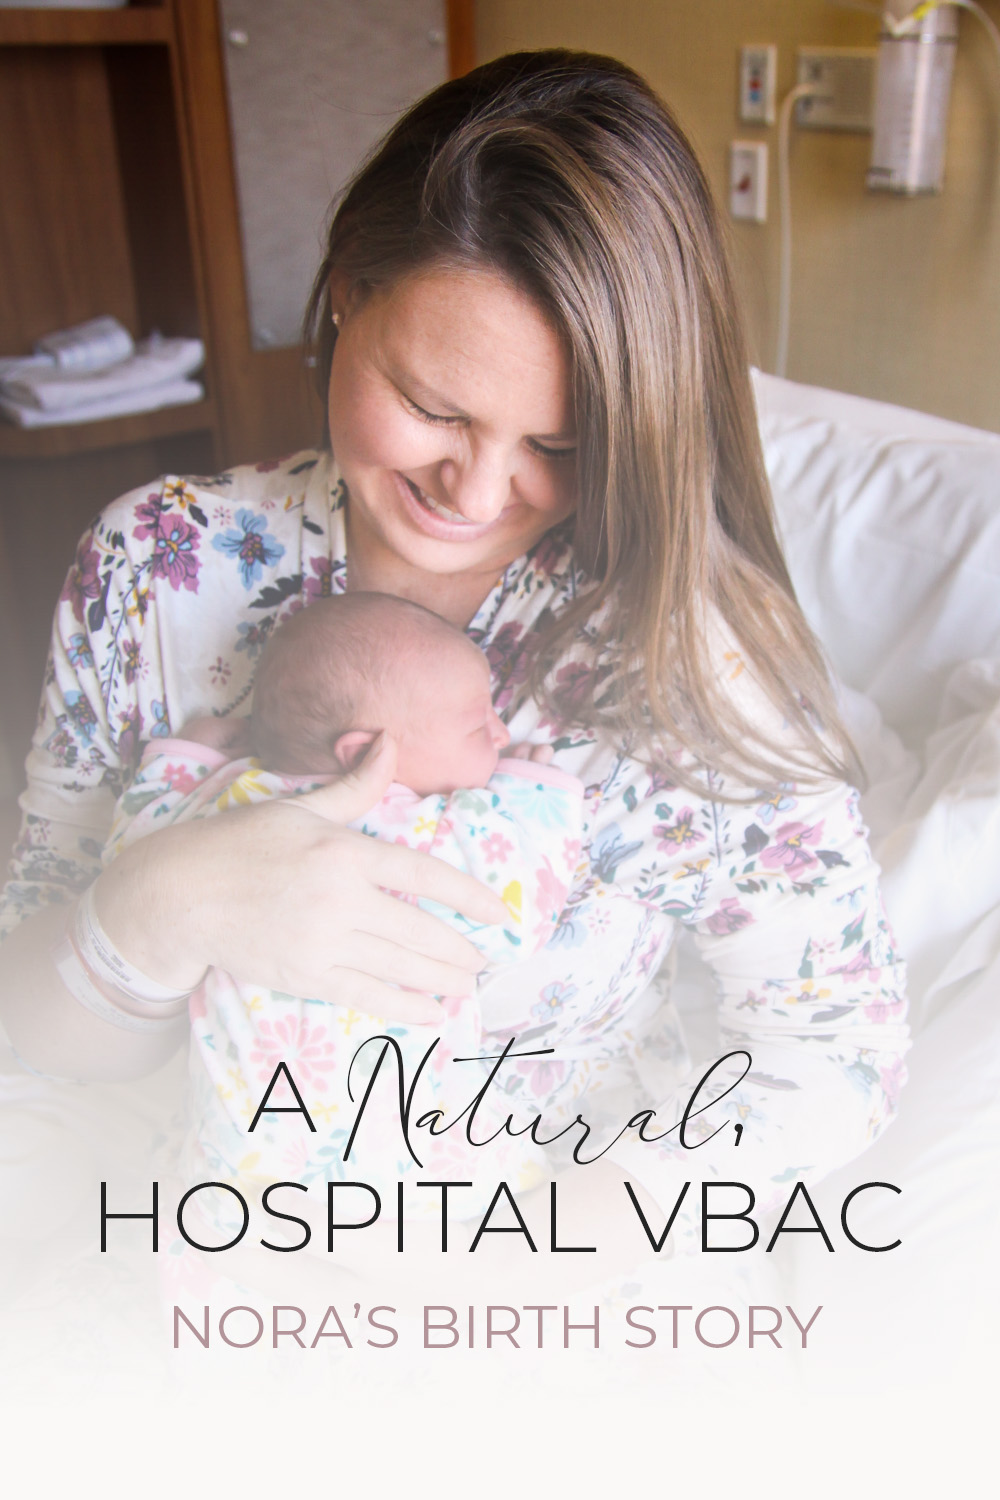 A Natural, Hospital VBAC Birth Story